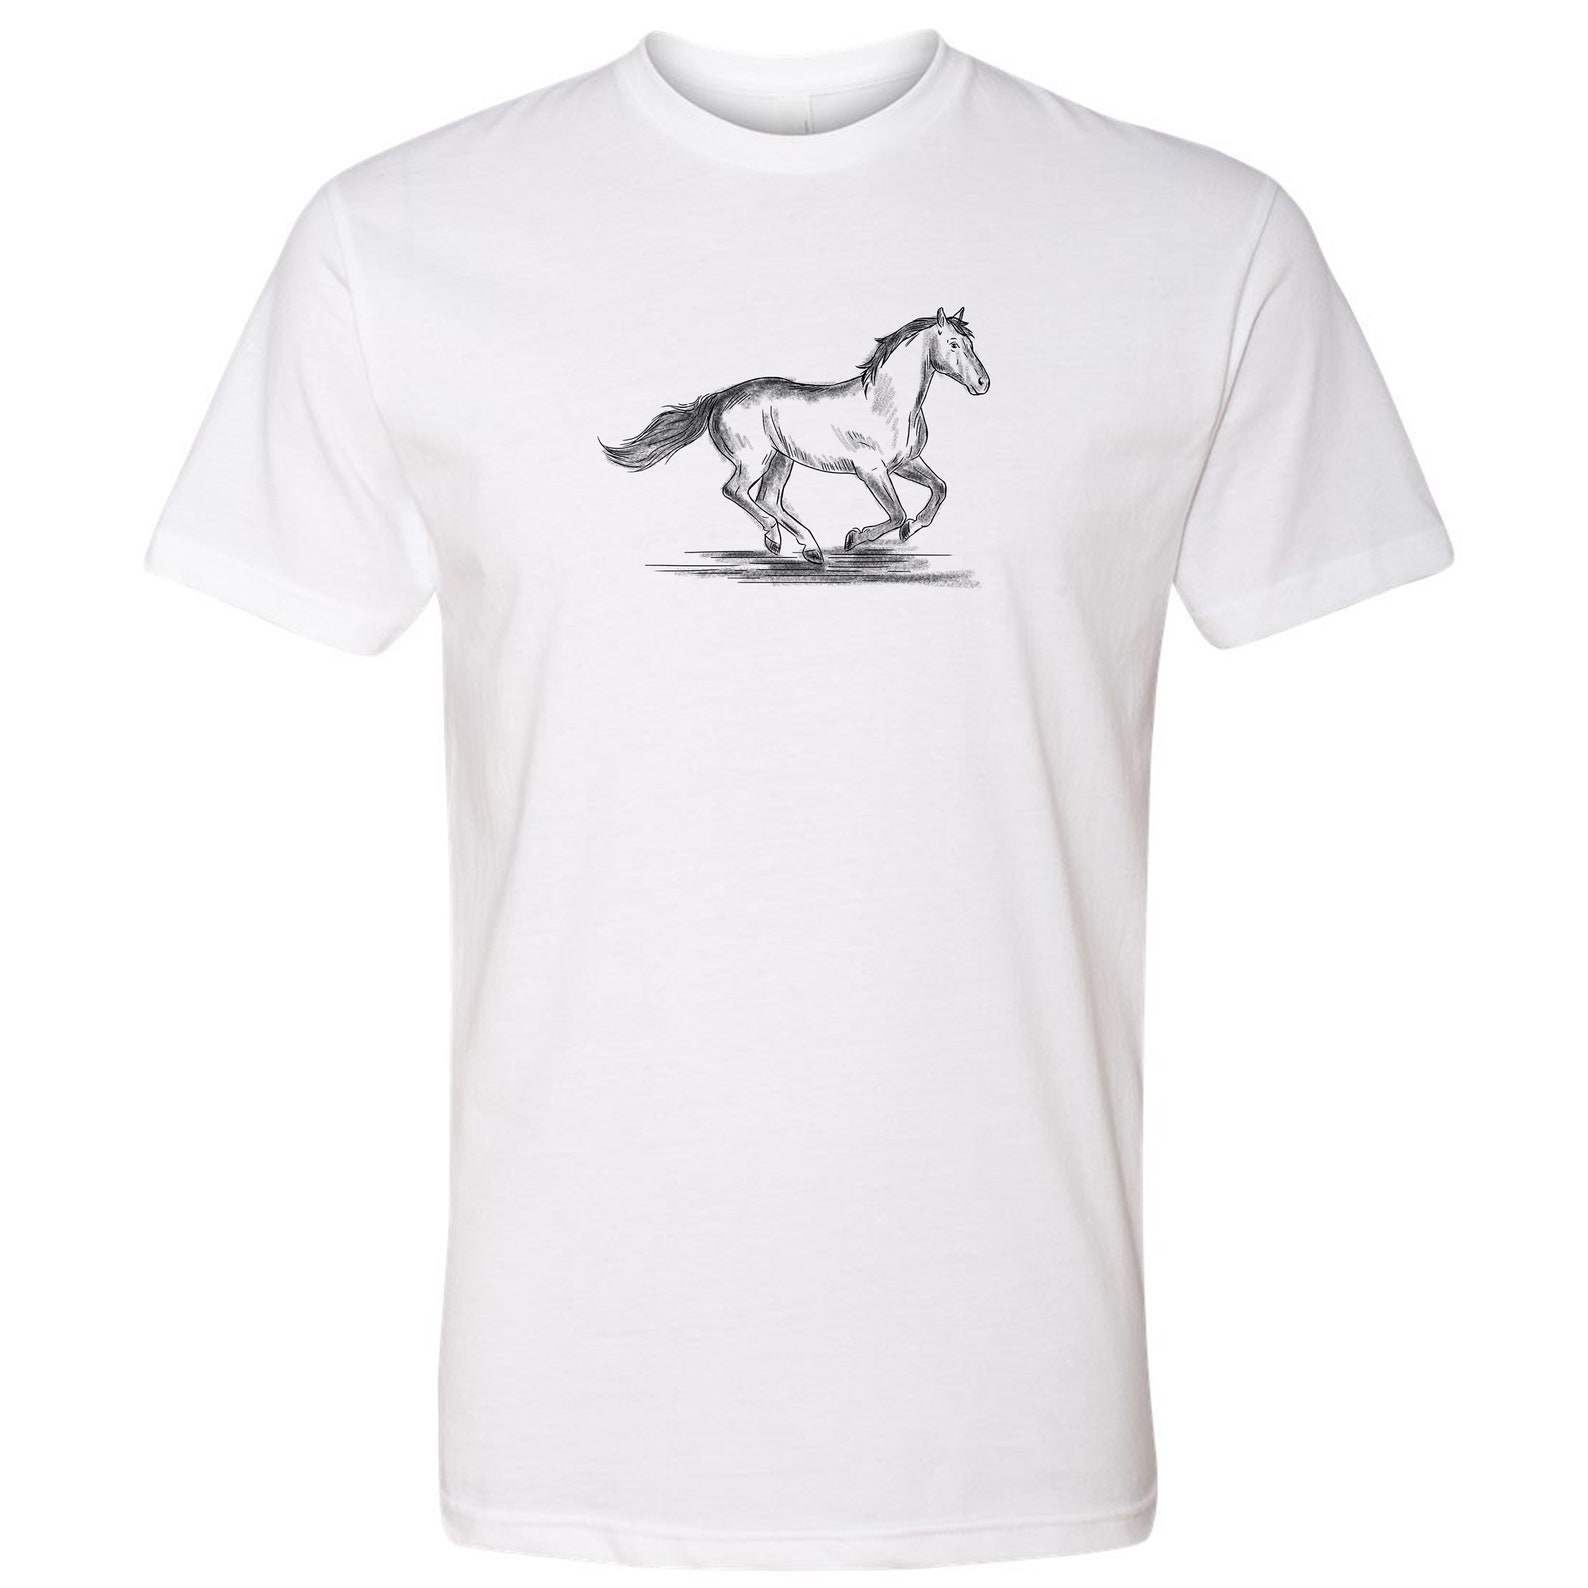 Horse Graphic White T-shirt Short Sleeves Unisex Shirt Next - Etsy